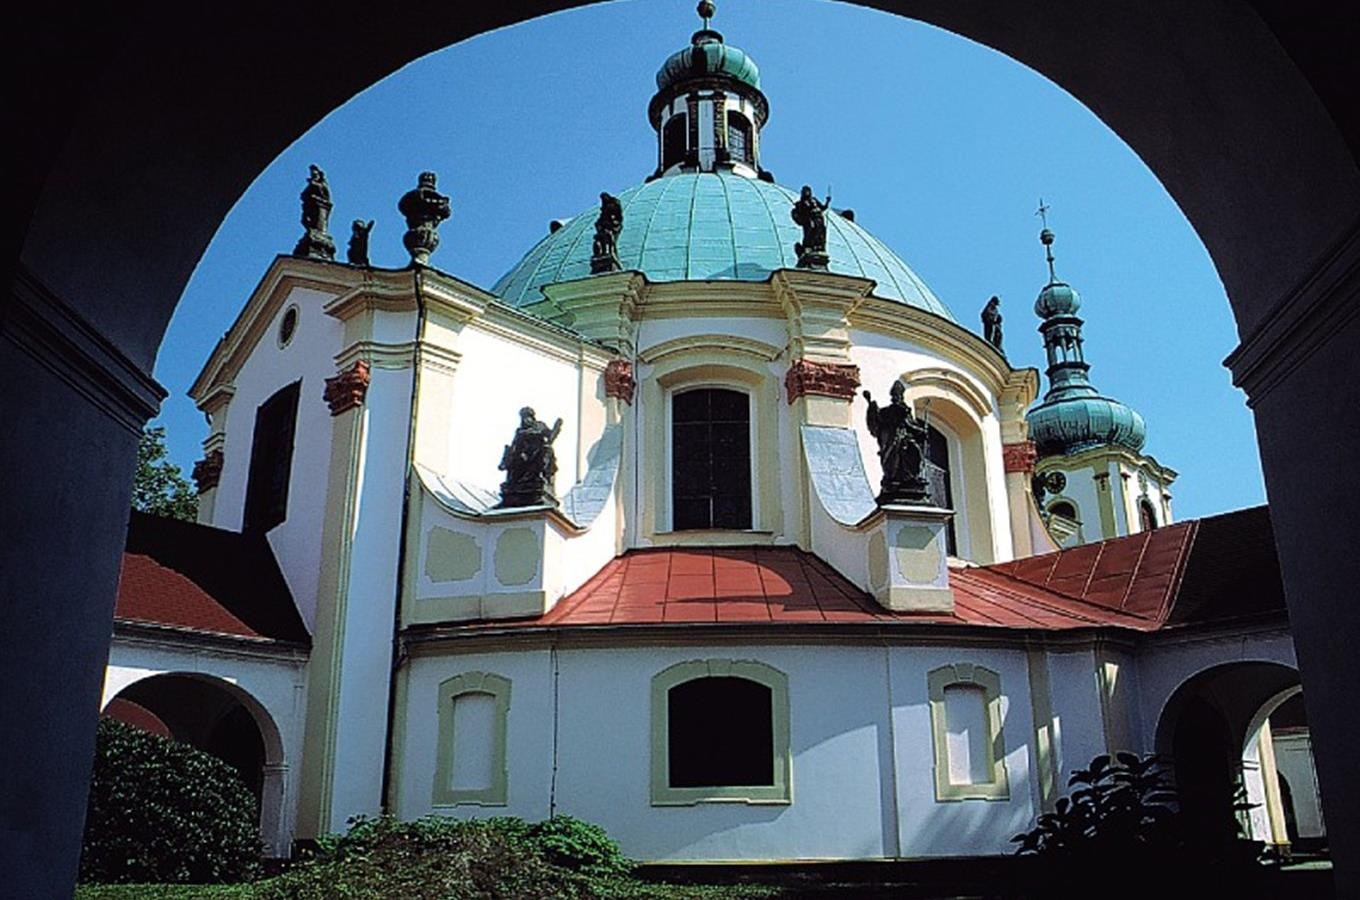 Poutní kaple Narození Panny Marie v České Kamenici